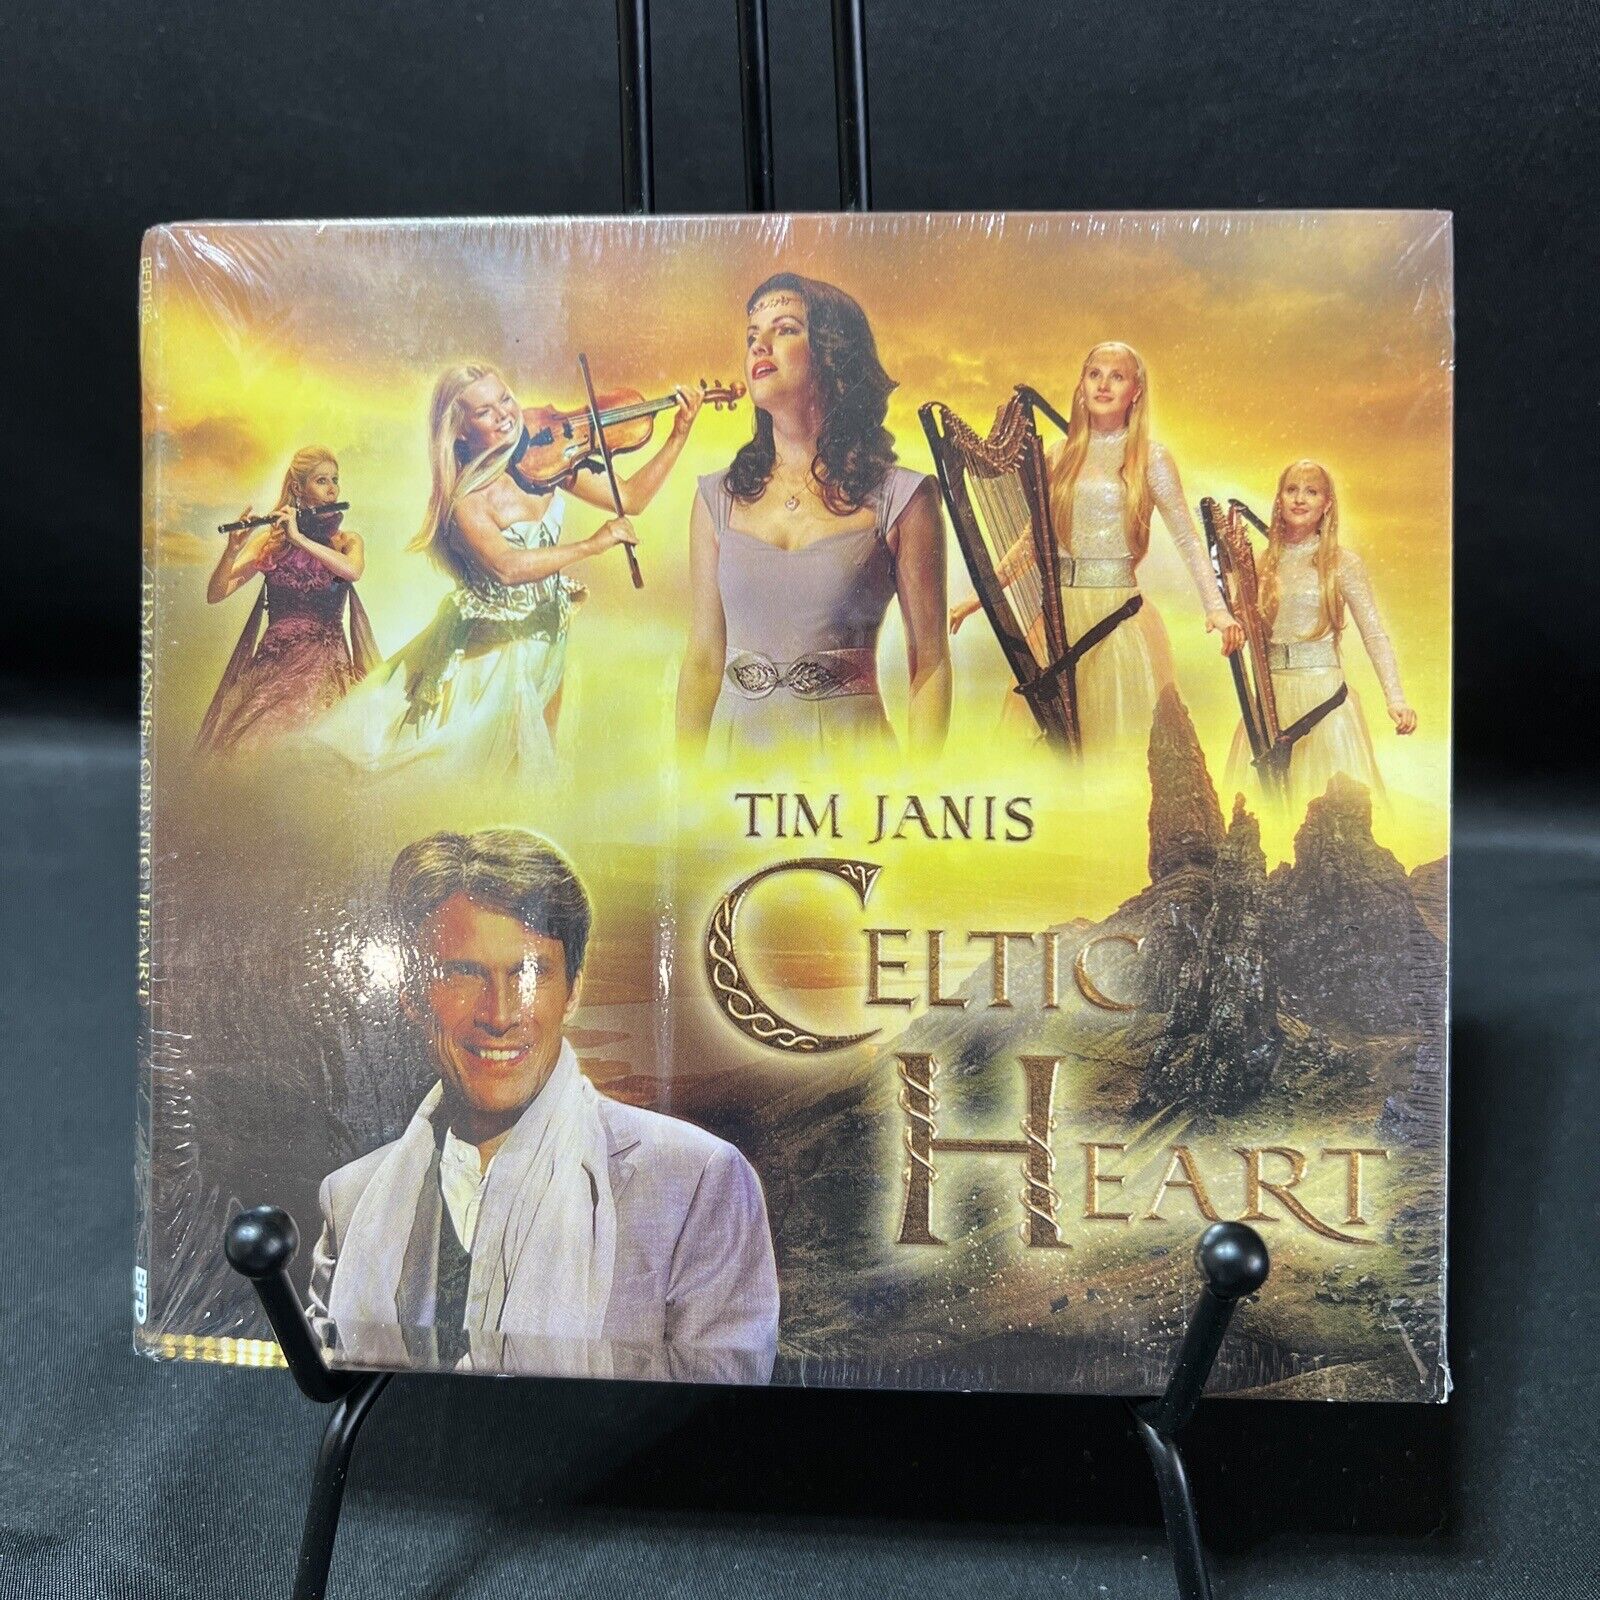 Celtic Heart by Tim Janis (CD, 2019)